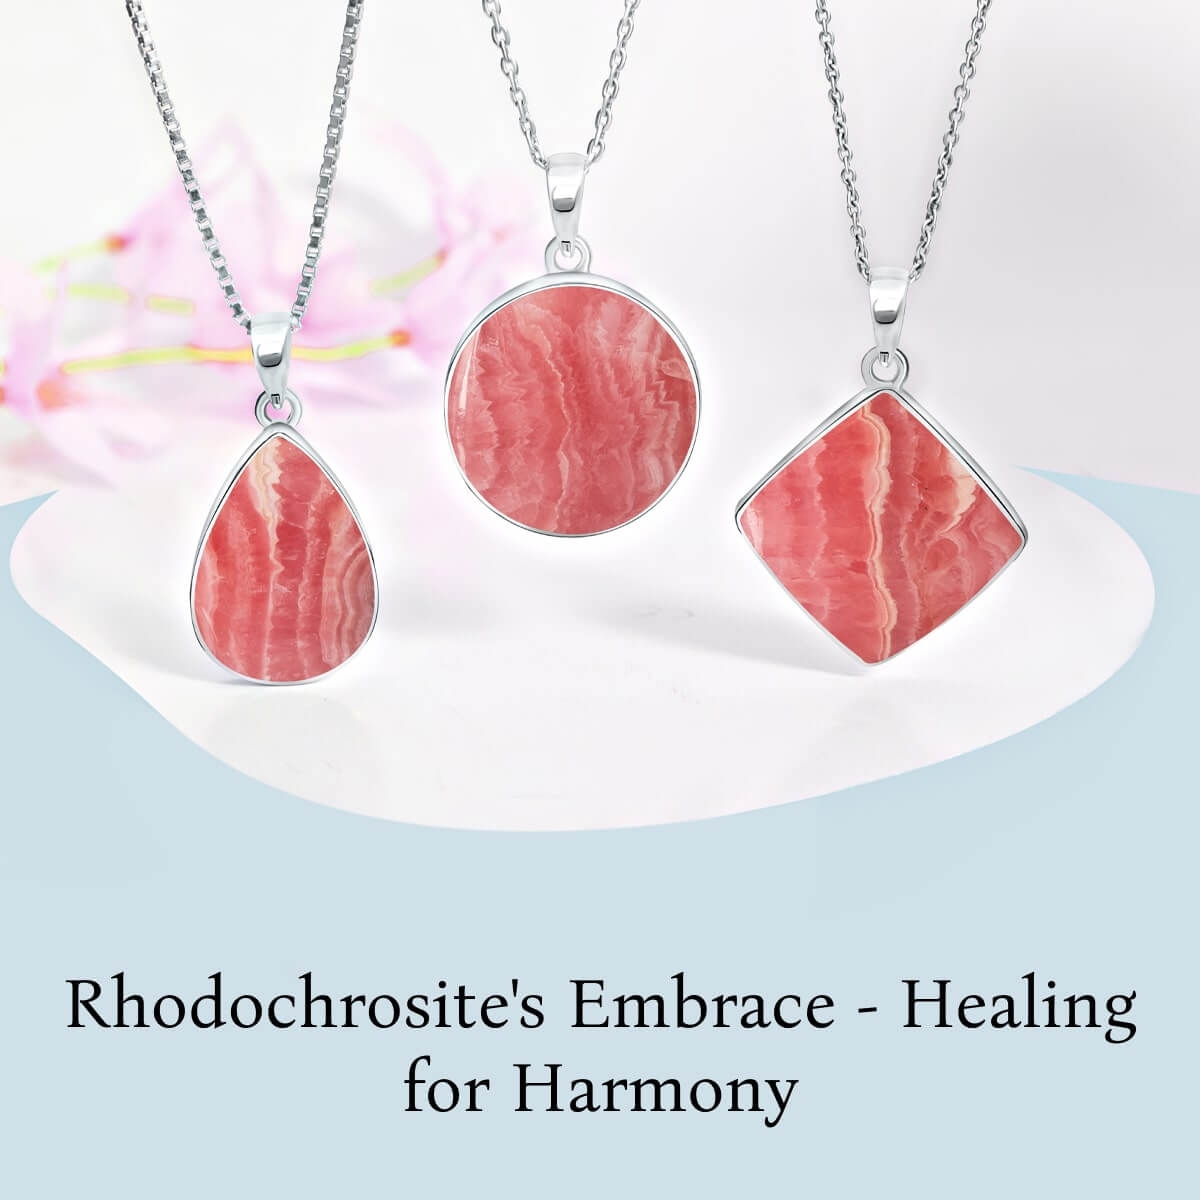 Rhodochrosite : Healing properties